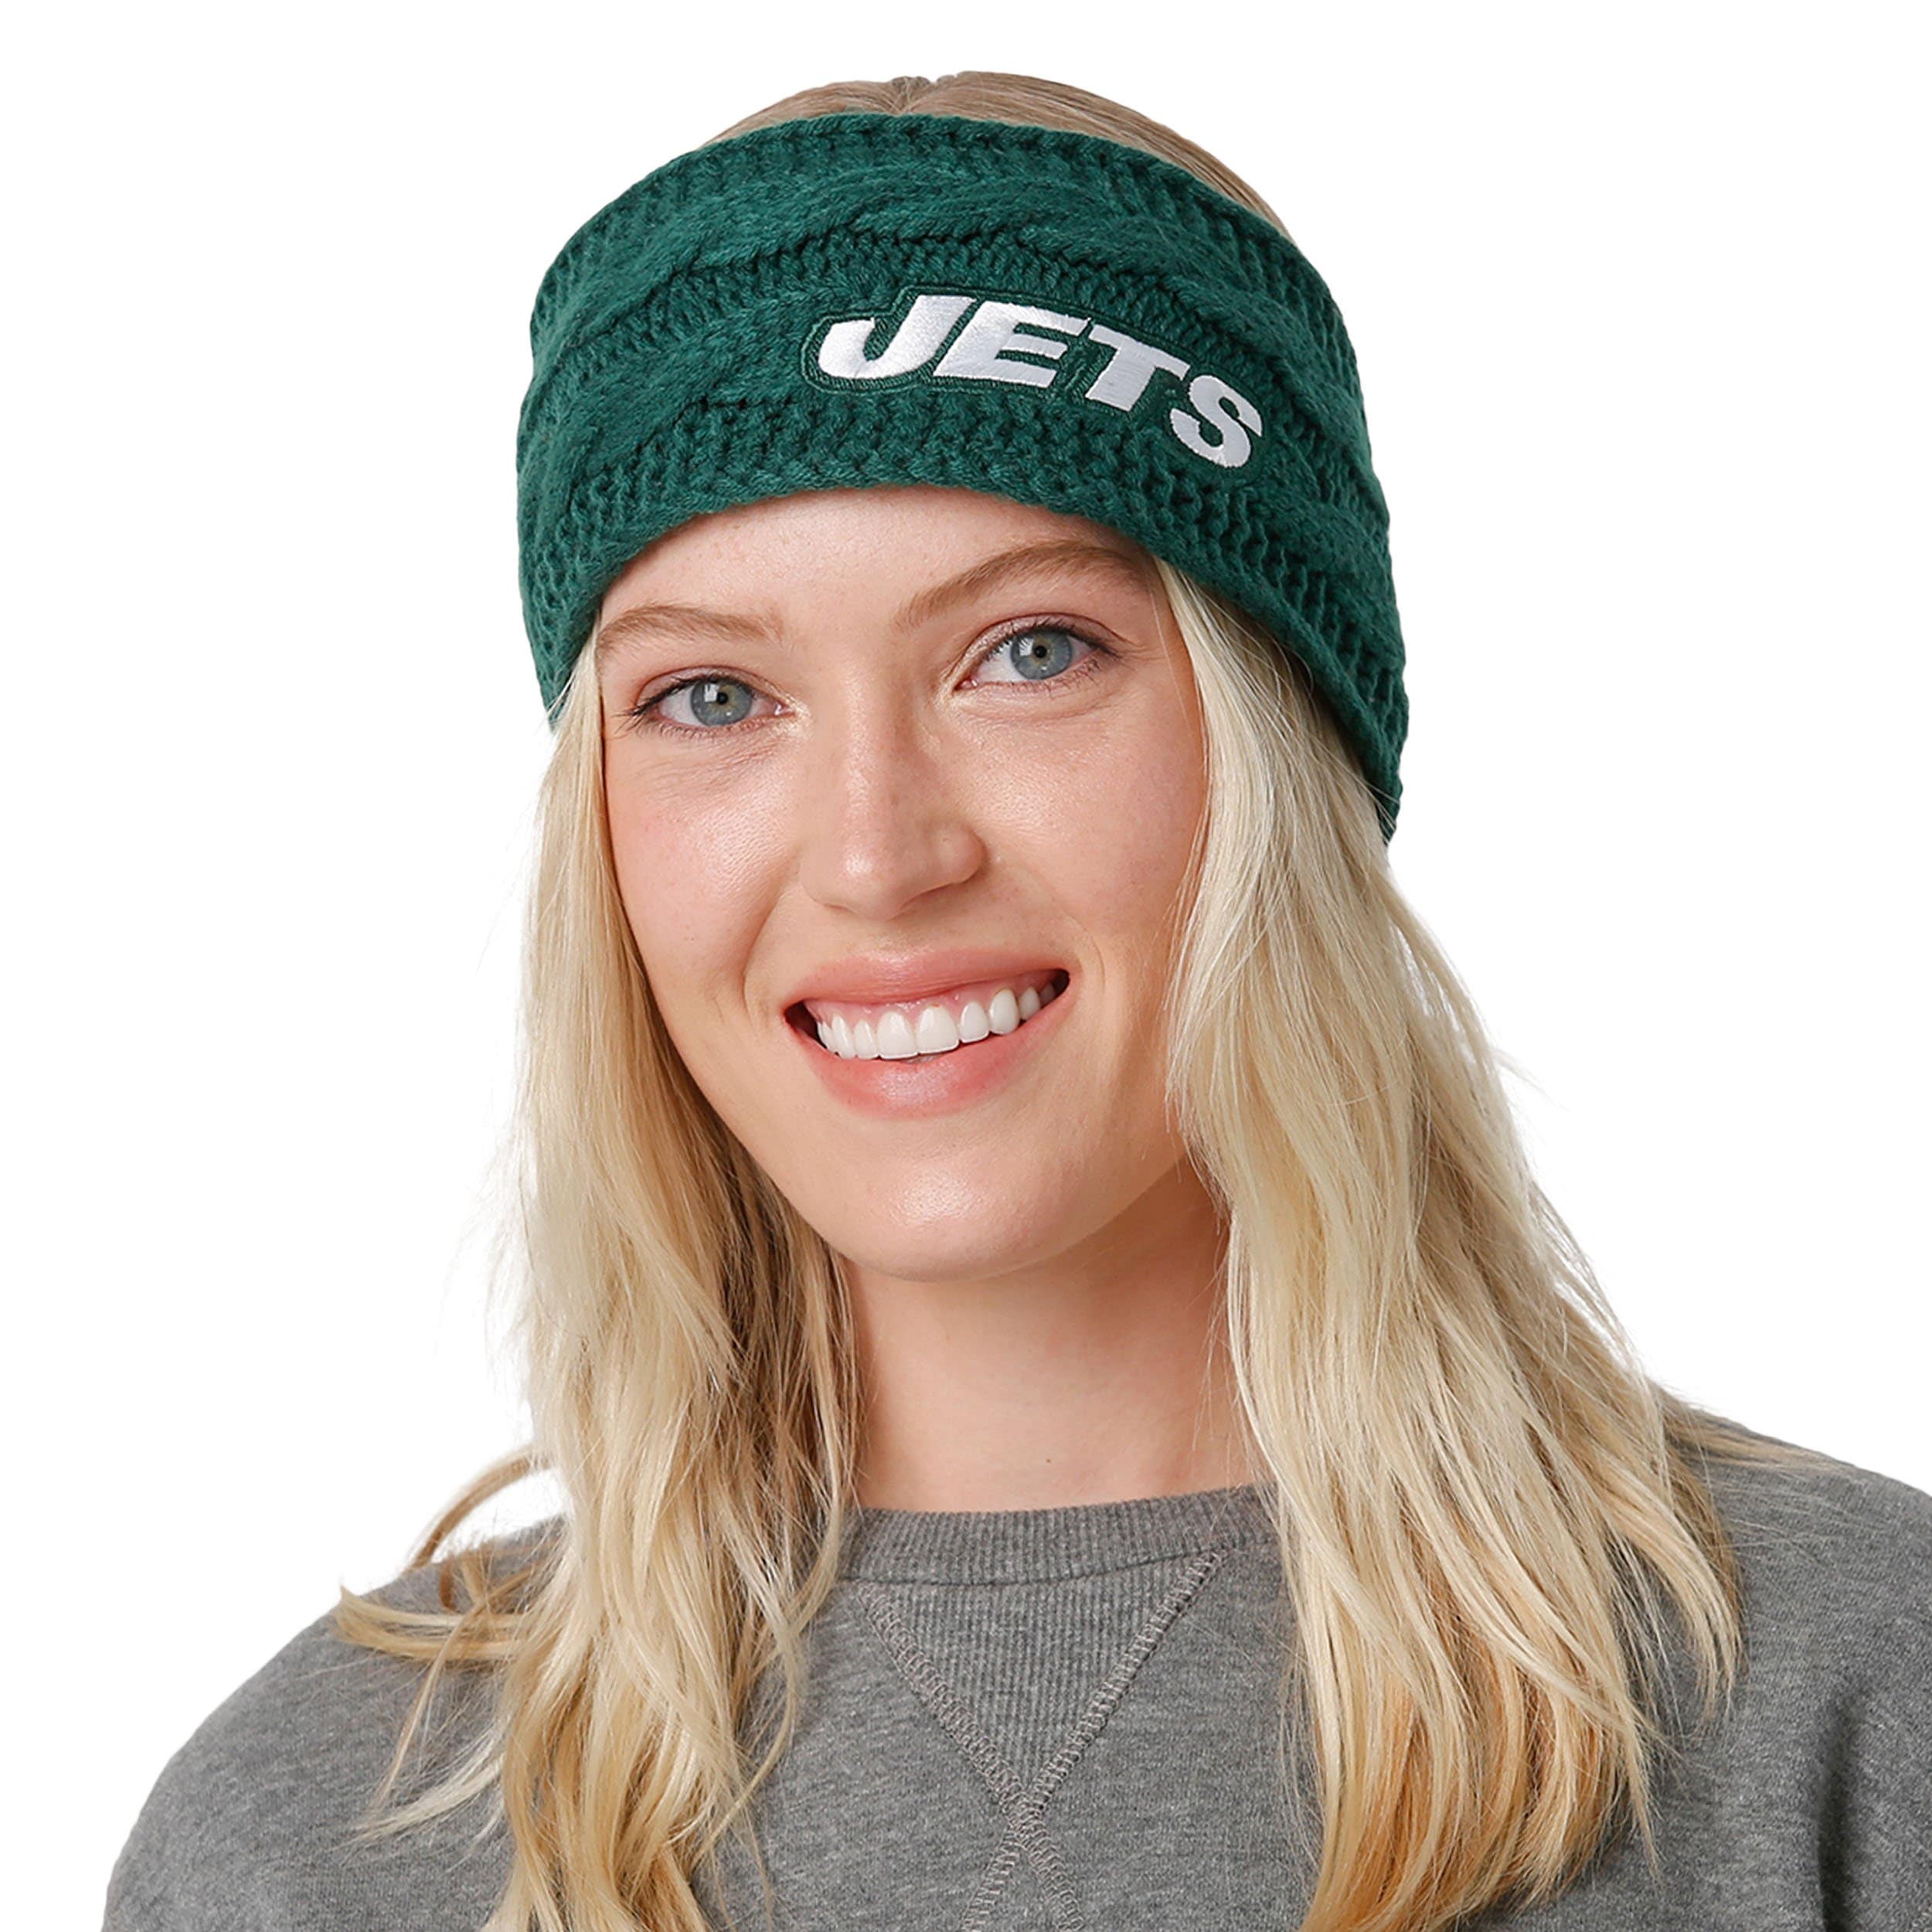 New York Jets NFL Womens Knit Fit Headband